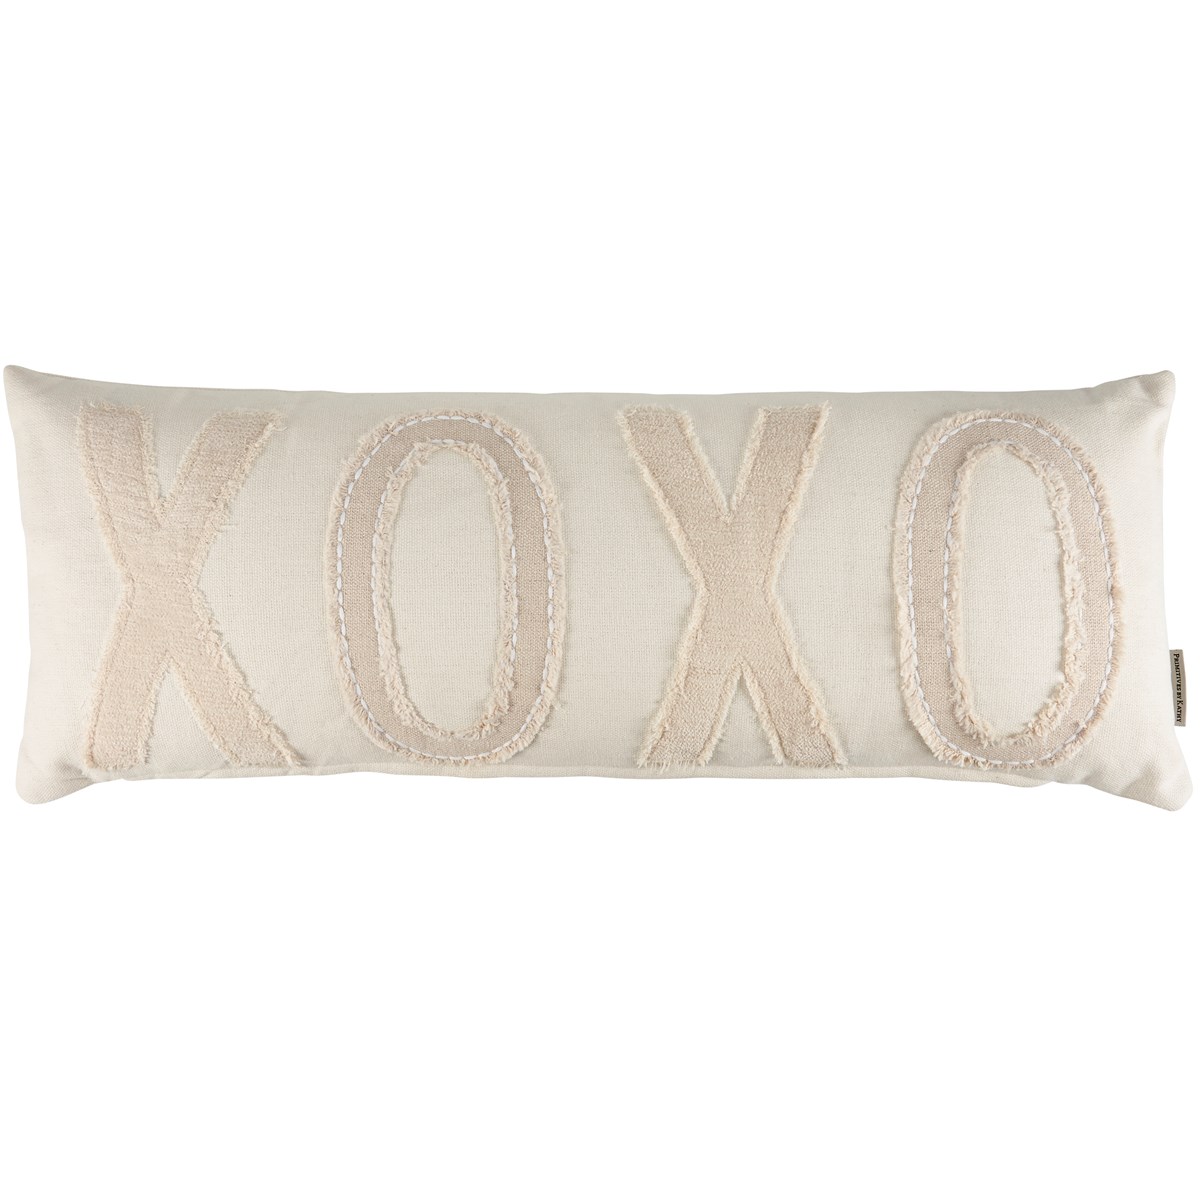 XOXO Pillow - Cotton, Zipper